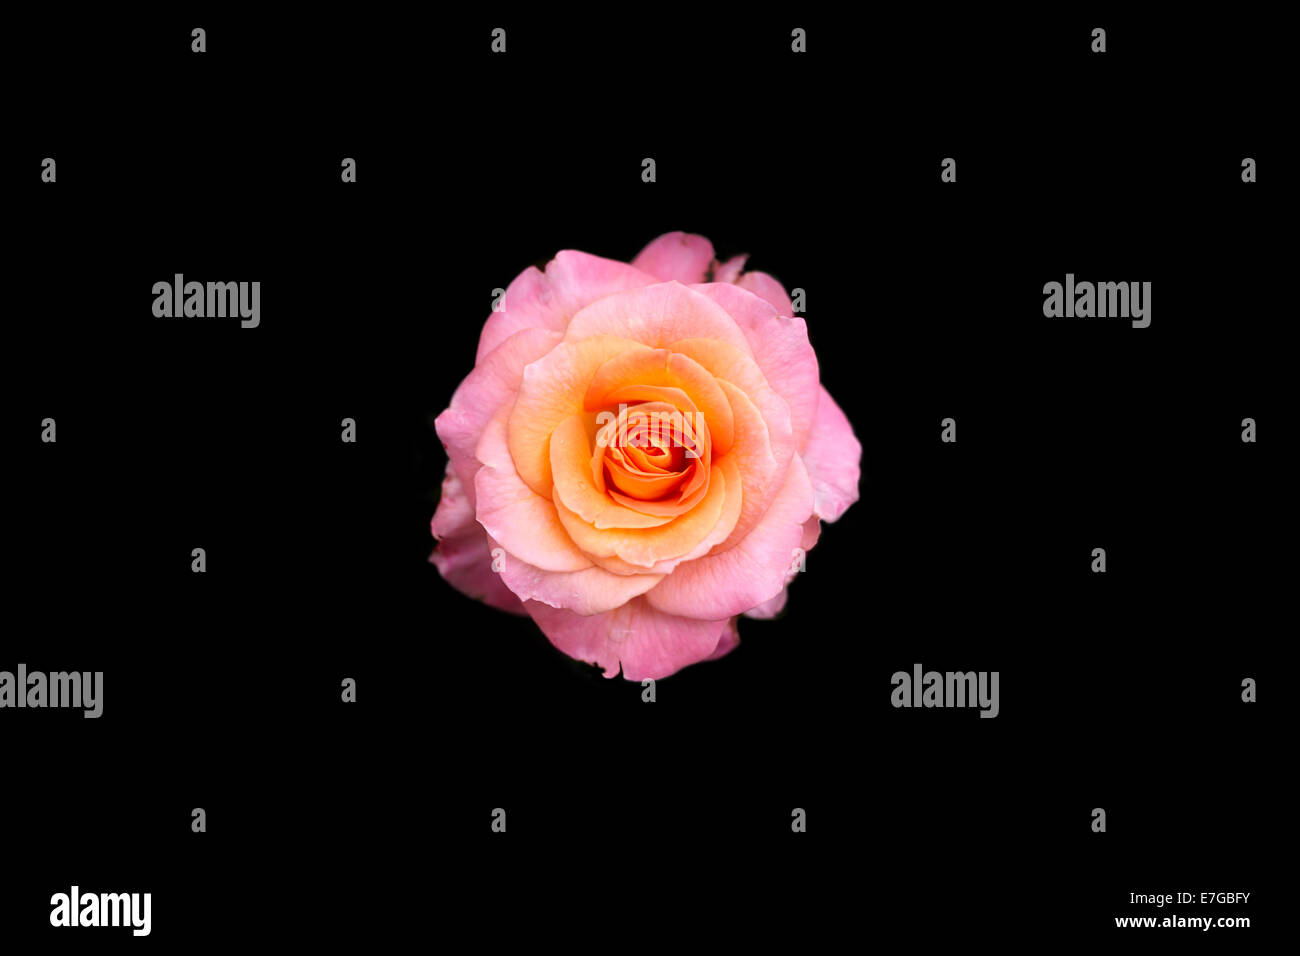 Bicolore rose rose photographié à portland Banque D'Images